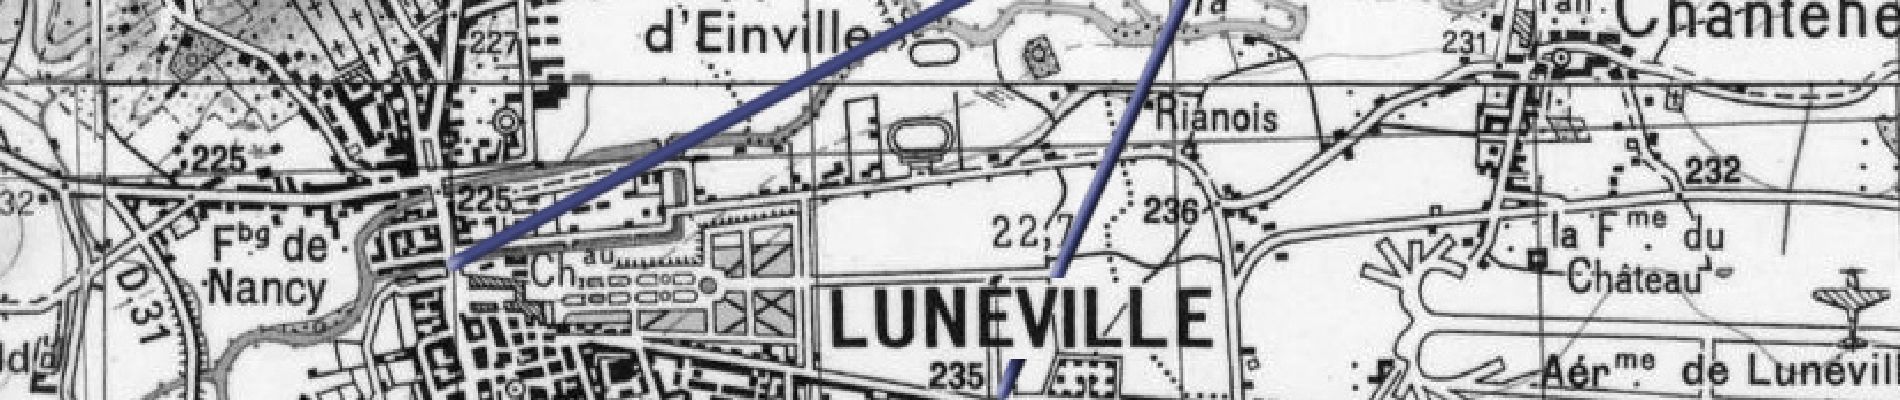 Point d'intérêt Lunéville - Lunéville 01 - Photo